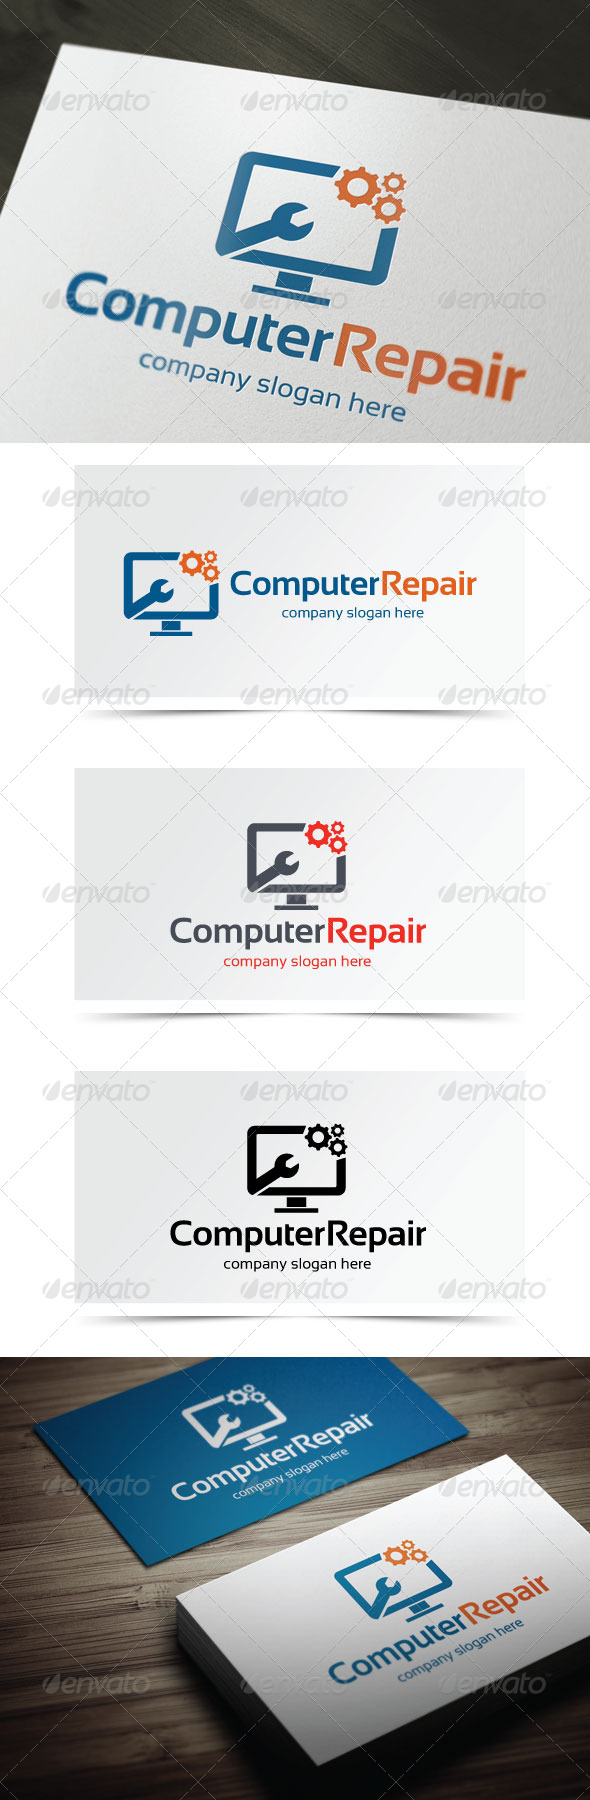 computer repair logo vector